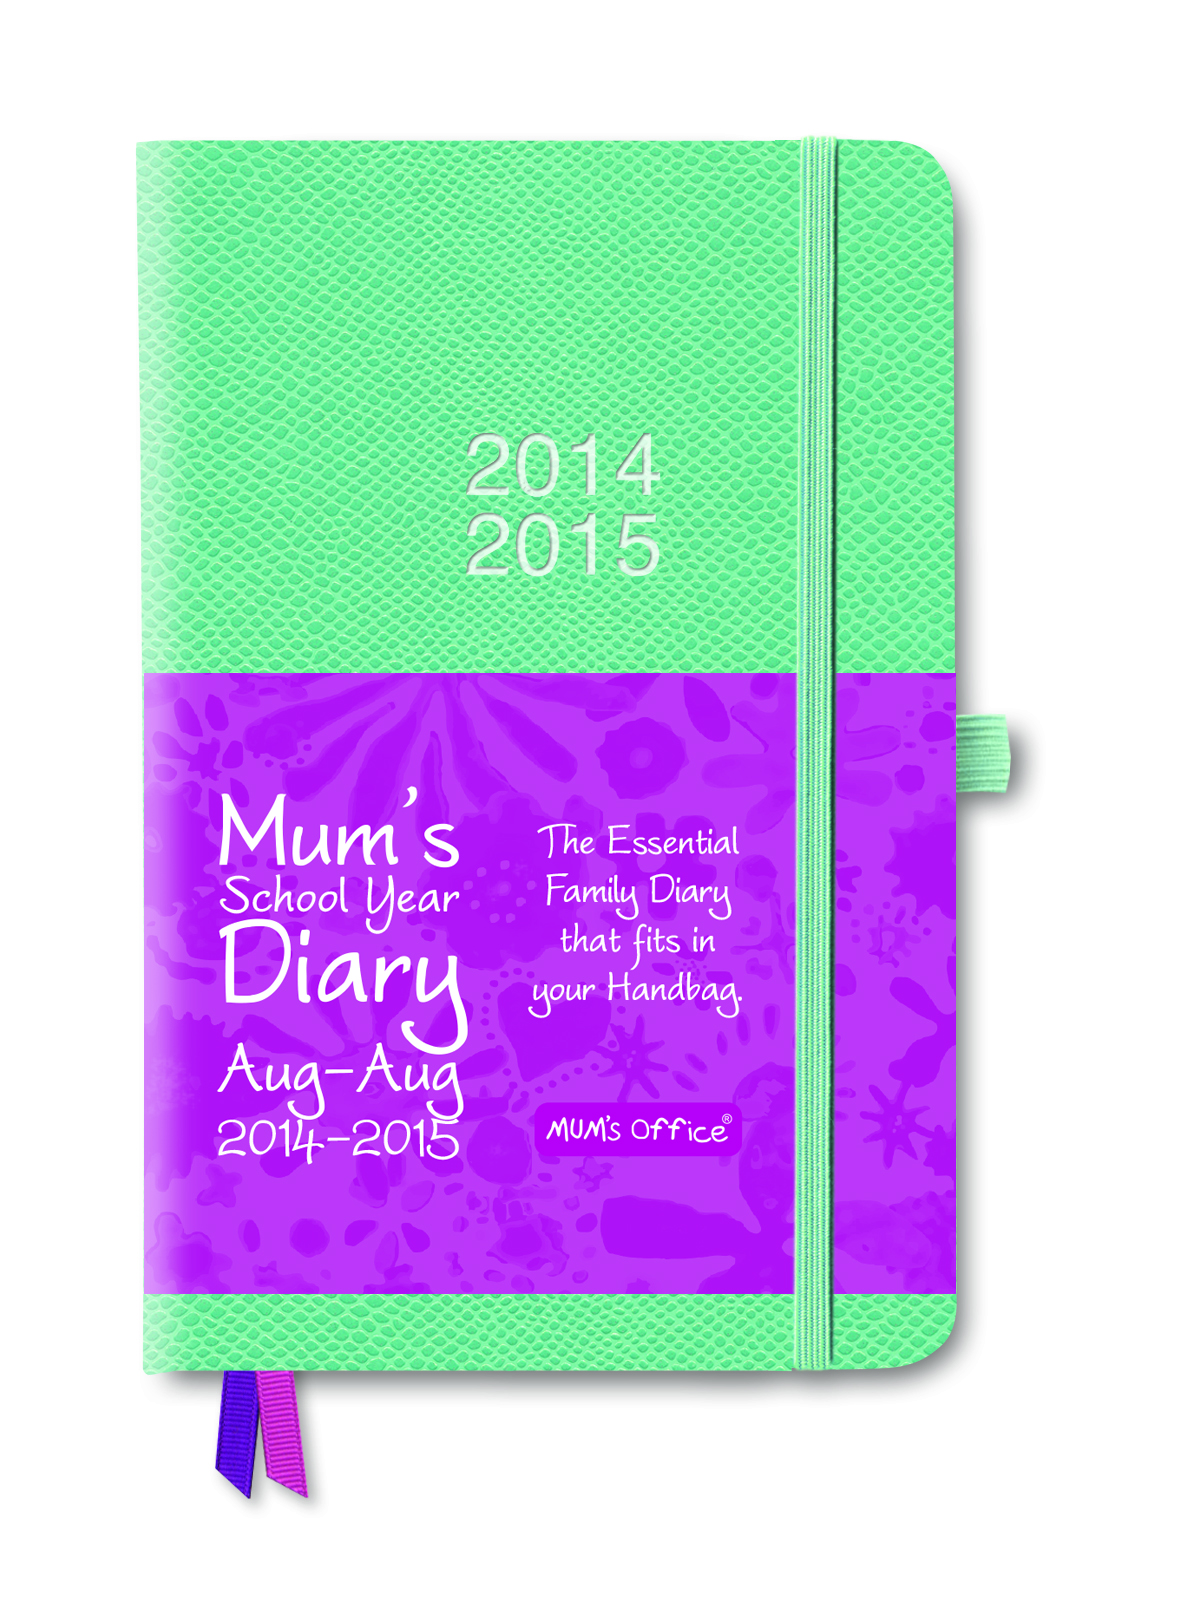 MUM's School Year Diary